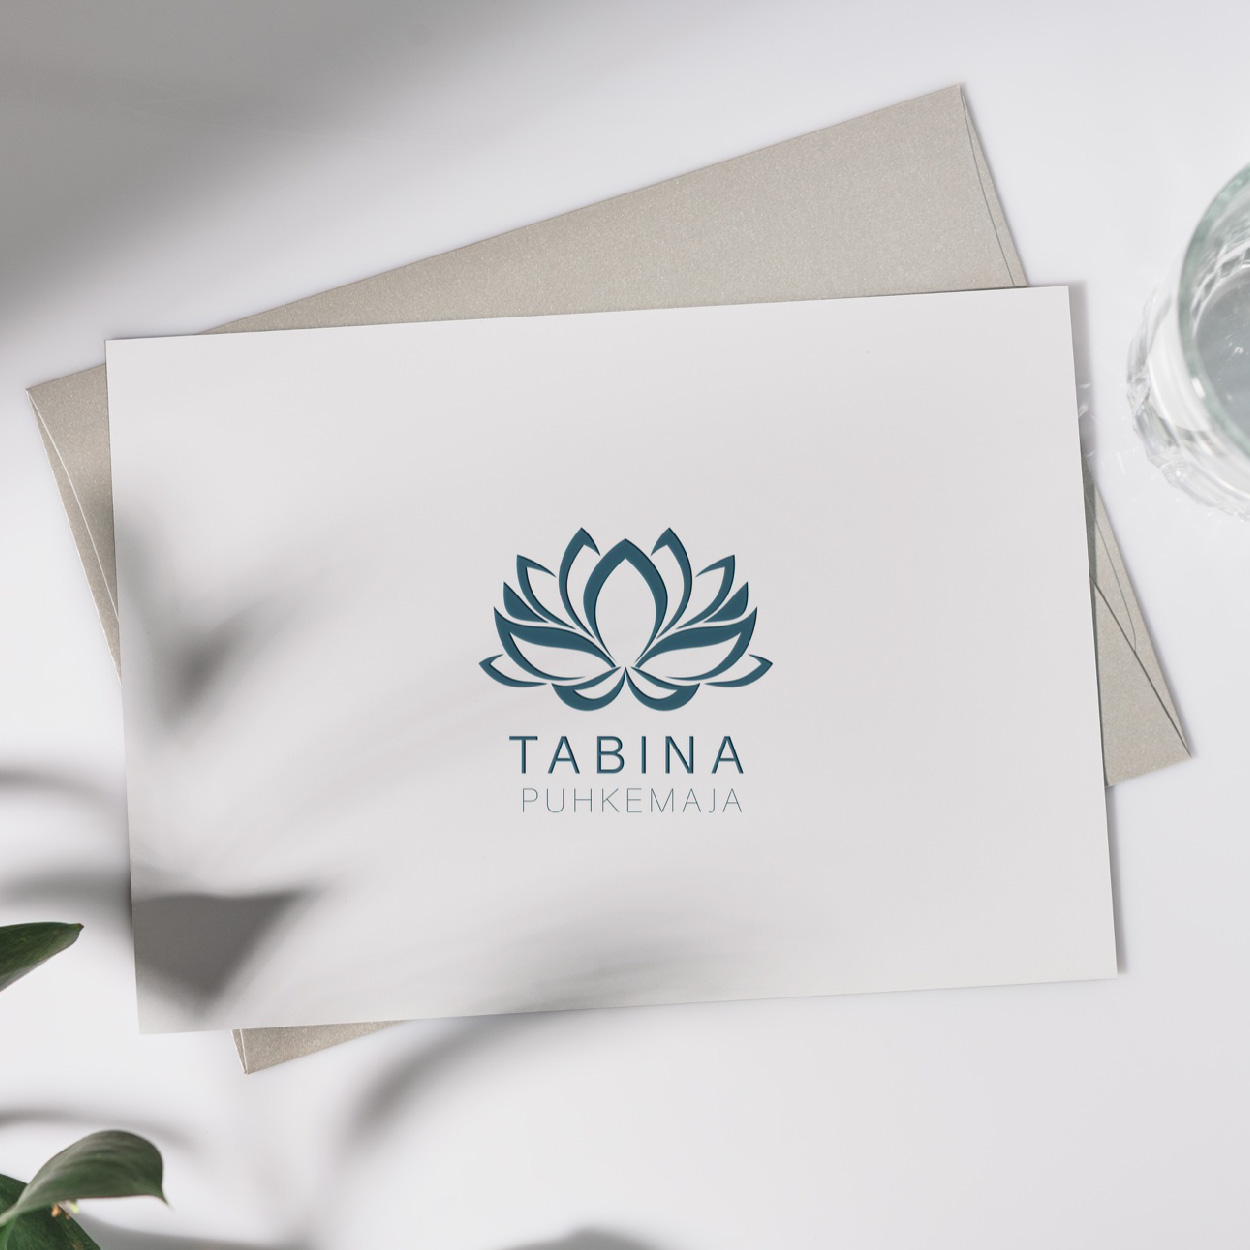 Tabina Puhkemaja logo